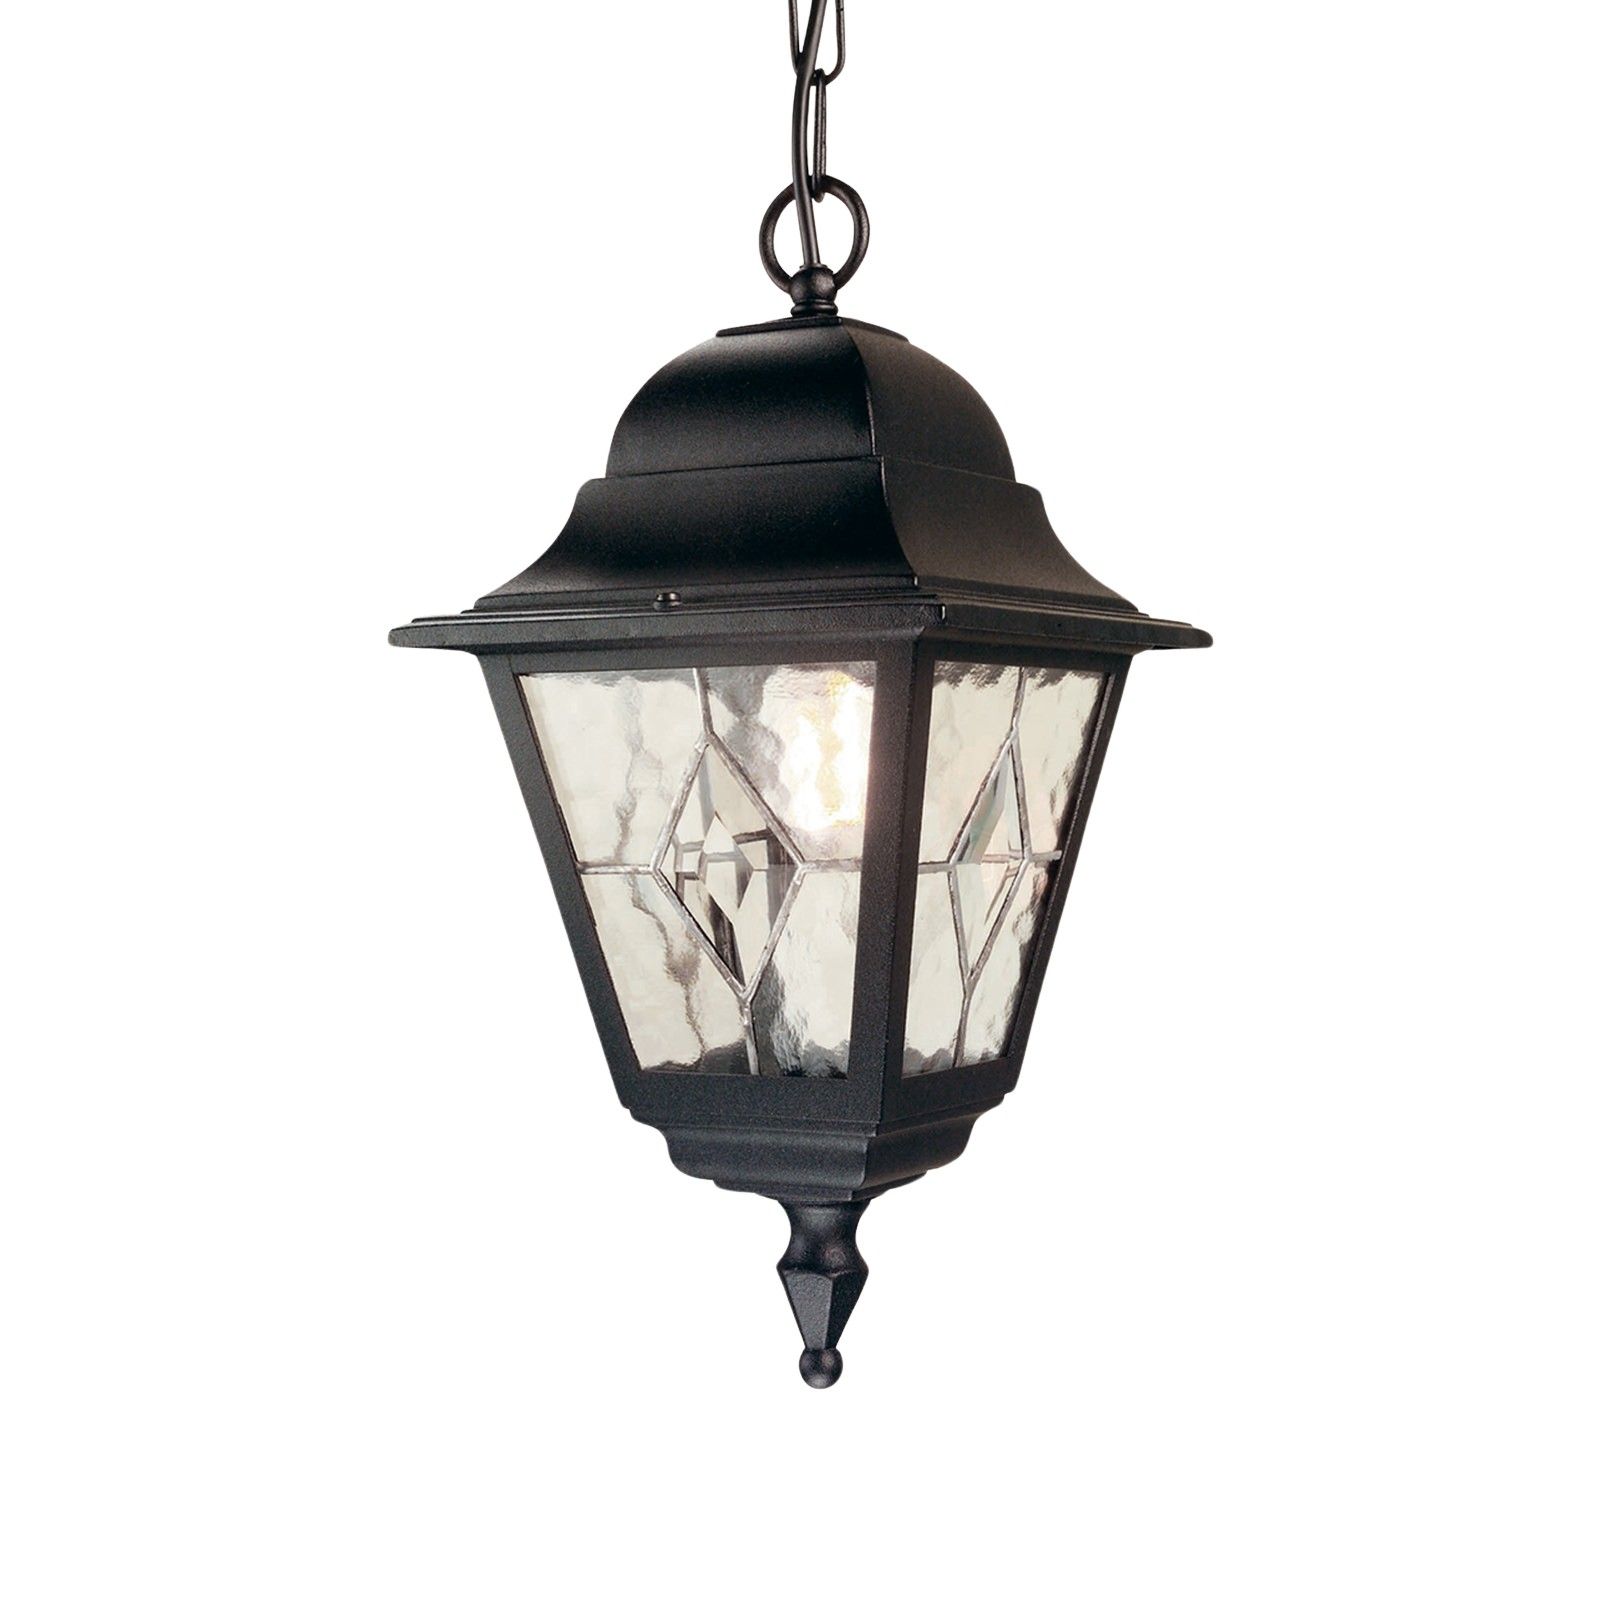 Norfolk chain lantern